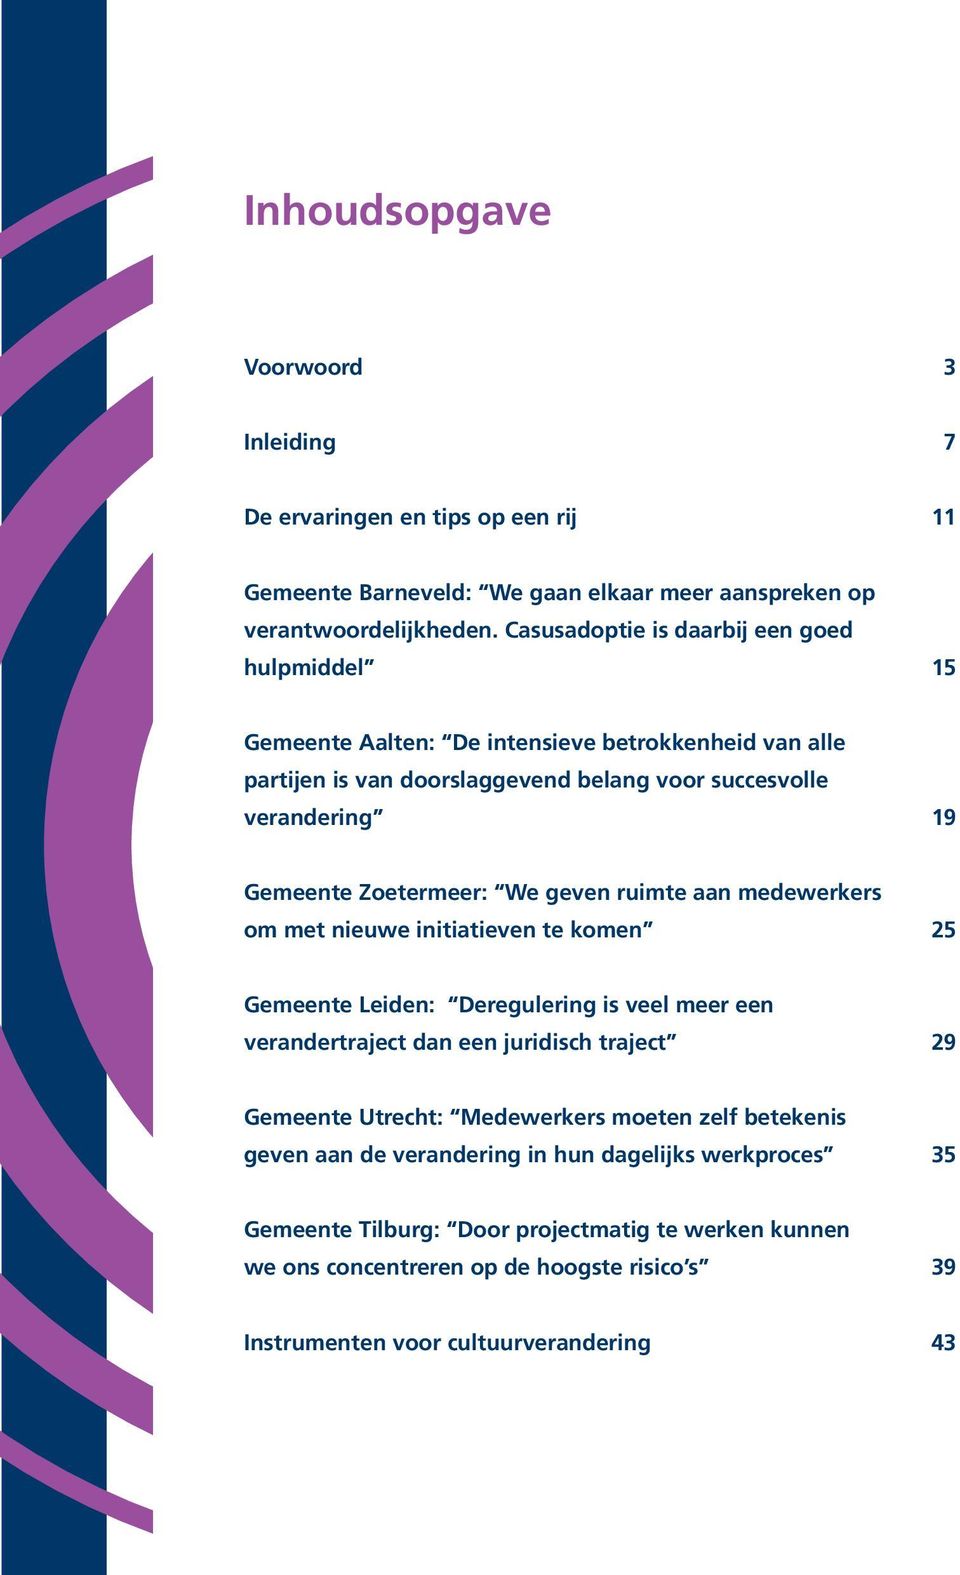 Zoetermeer: We geven ruimte aan medewerkers om met nieuwe initiatieven te komen 25 Gemeente Leiden: Deregulering is veel meer een verandertraject dan een juridisch traject 29 Gemeente